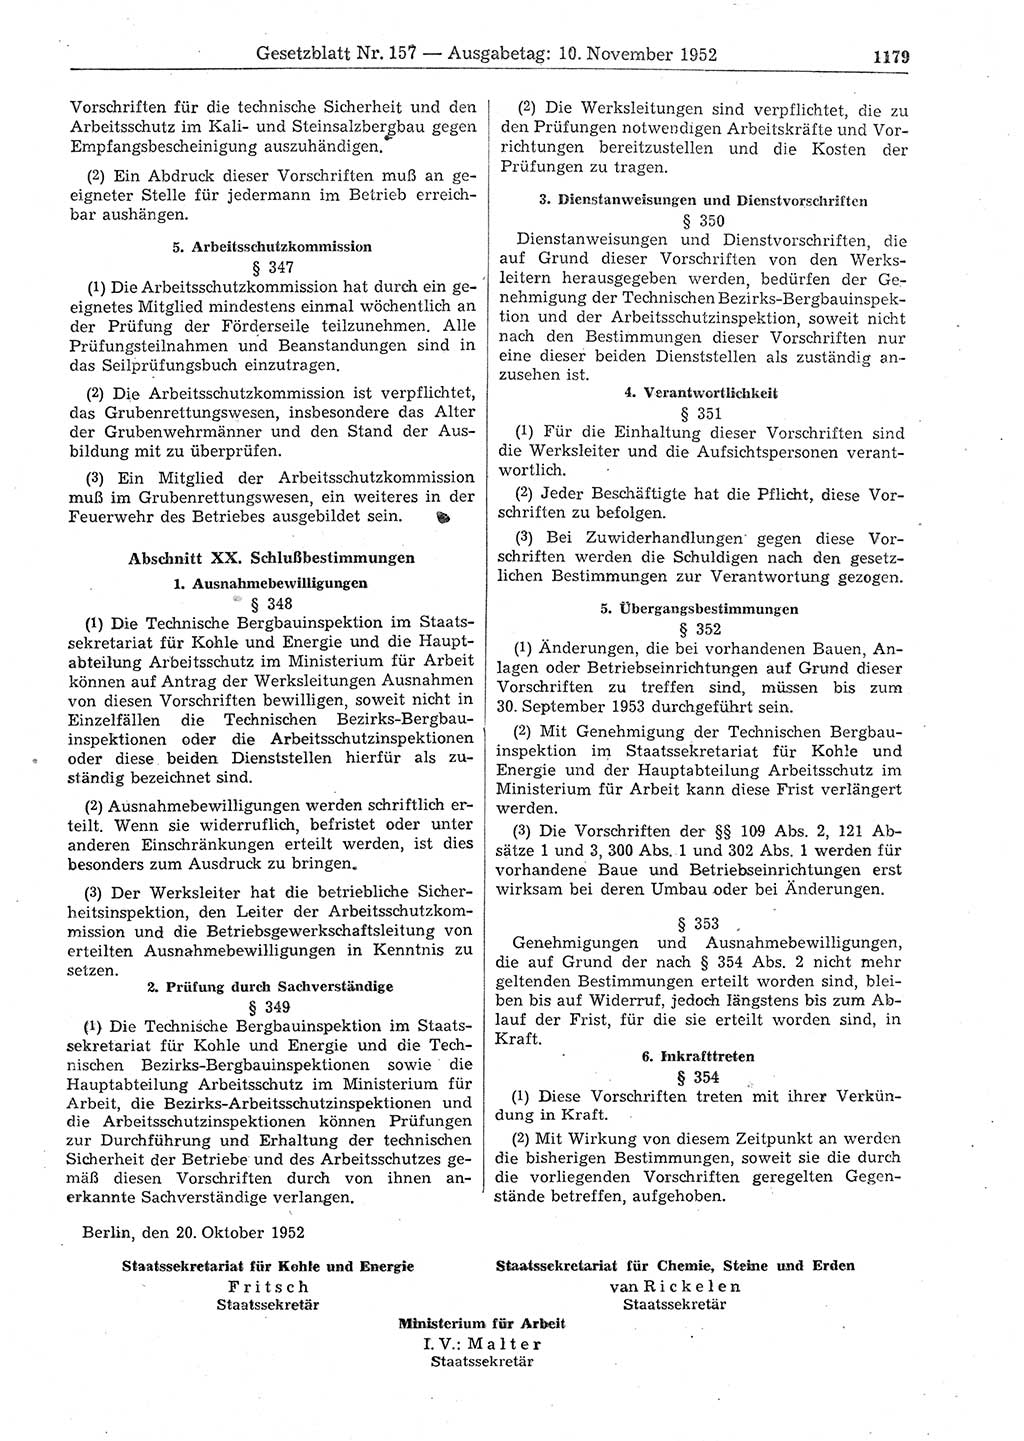 Gesetzblatt (GBl.) der Deutschen Demokratischen Republik (DDR) 1952, Seite 1179 (GBl. DDR 1952, S. 1179)